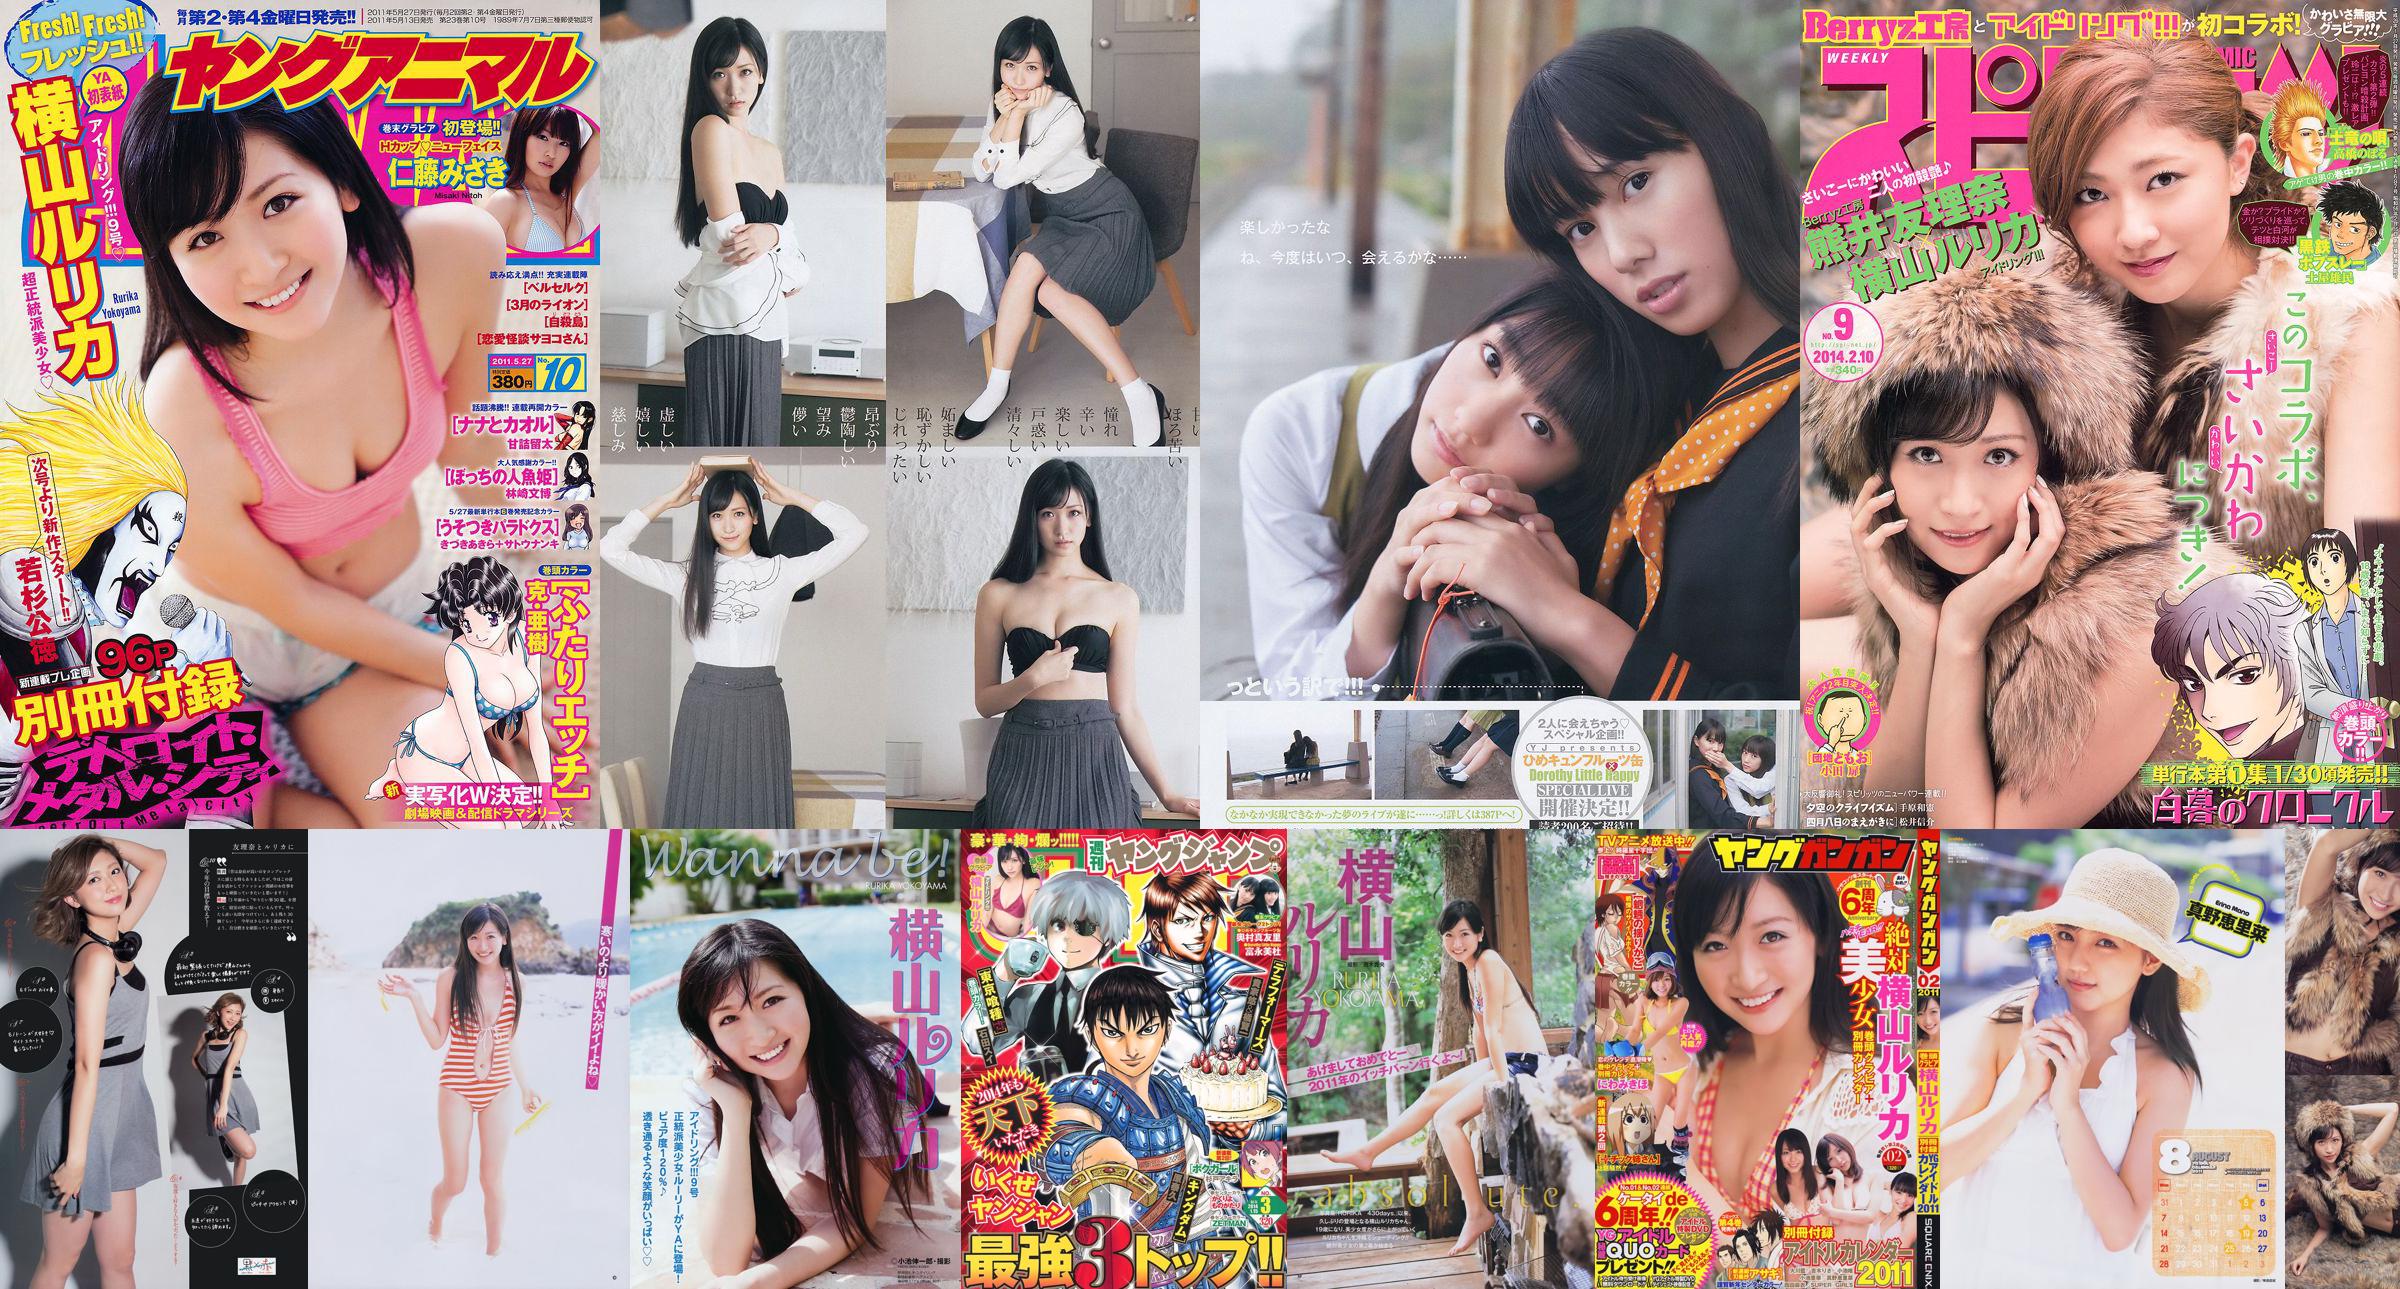 [Young Gangan] Rurika Yokoyama 2011 No.02 Photo Magazine No.4f03ee หน้า 1